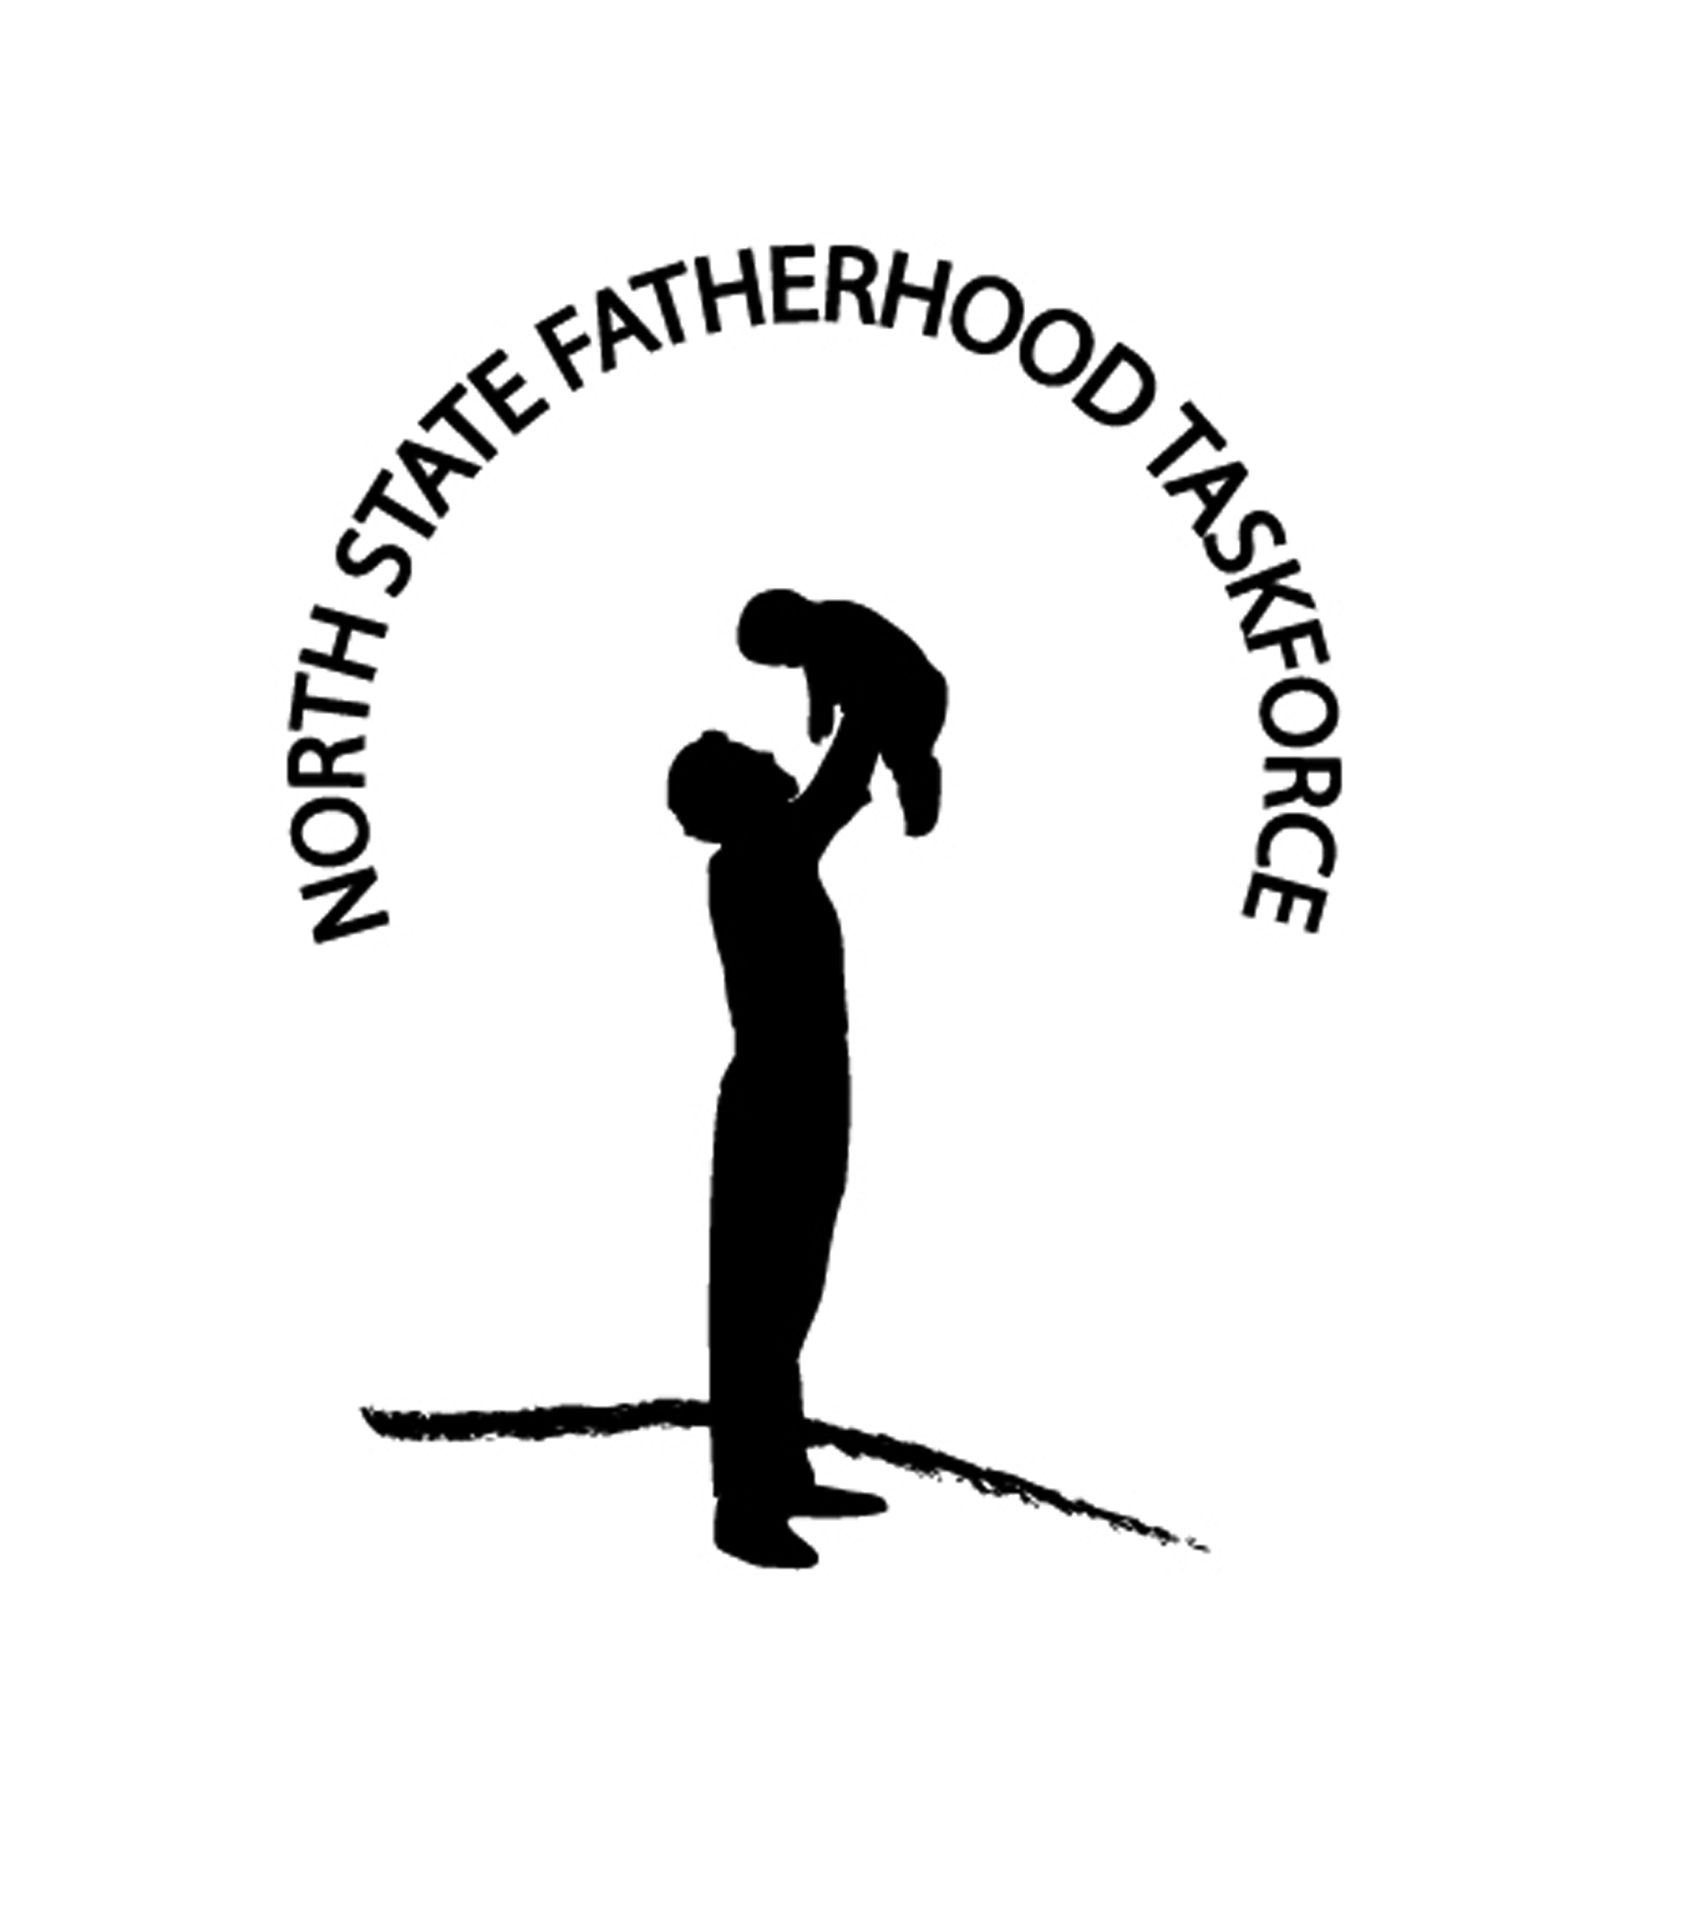 fatherhood-taskforceb